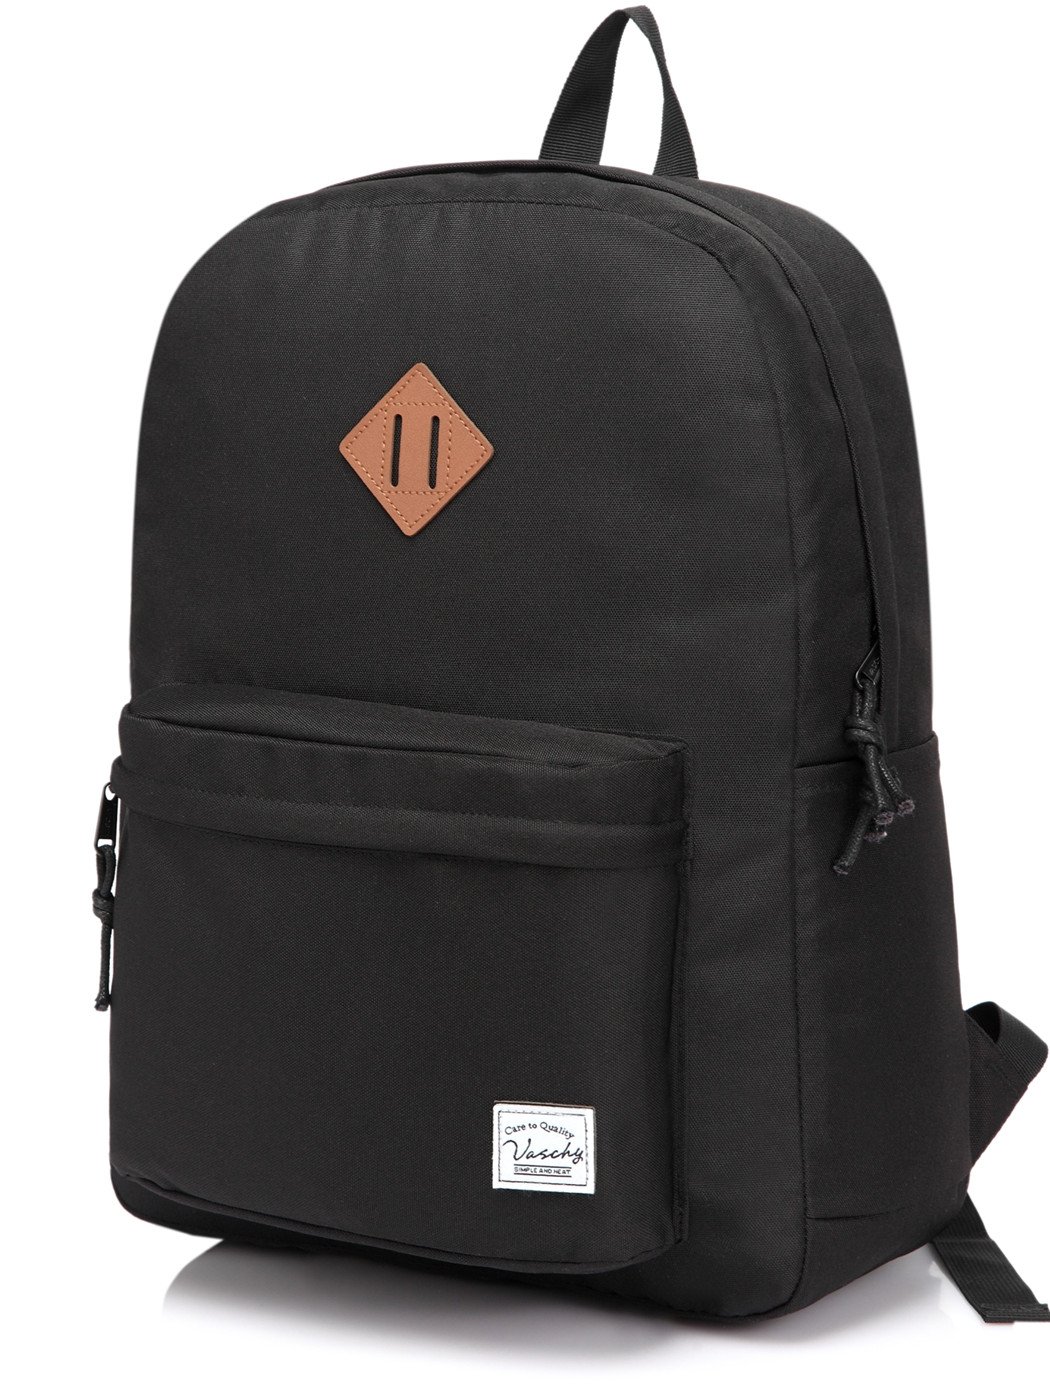 Basics Classic School Backpack - Black